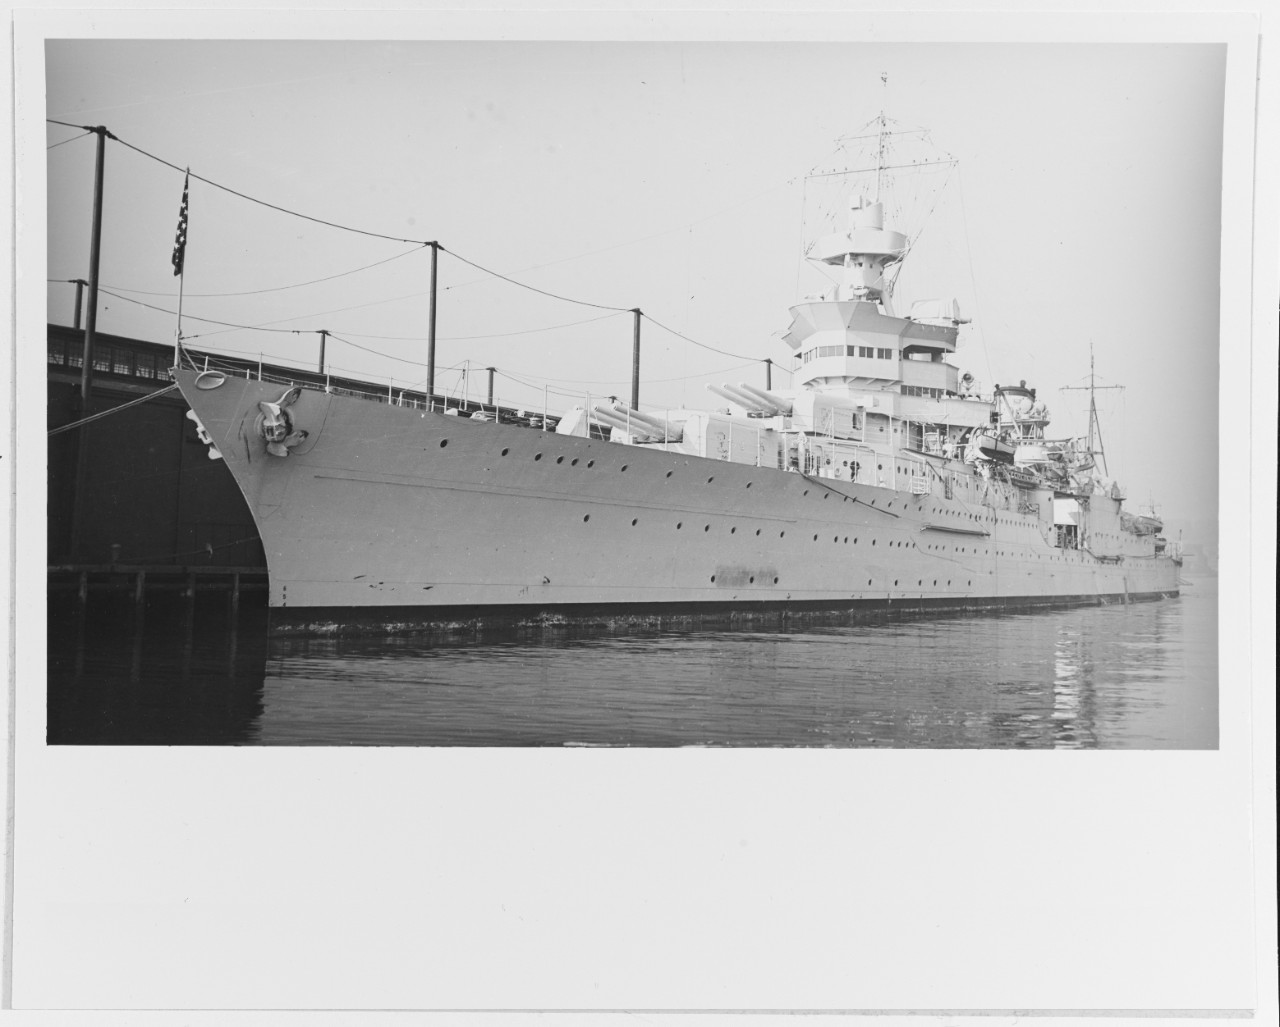 USS INDIANAPOLIS (CA-35)